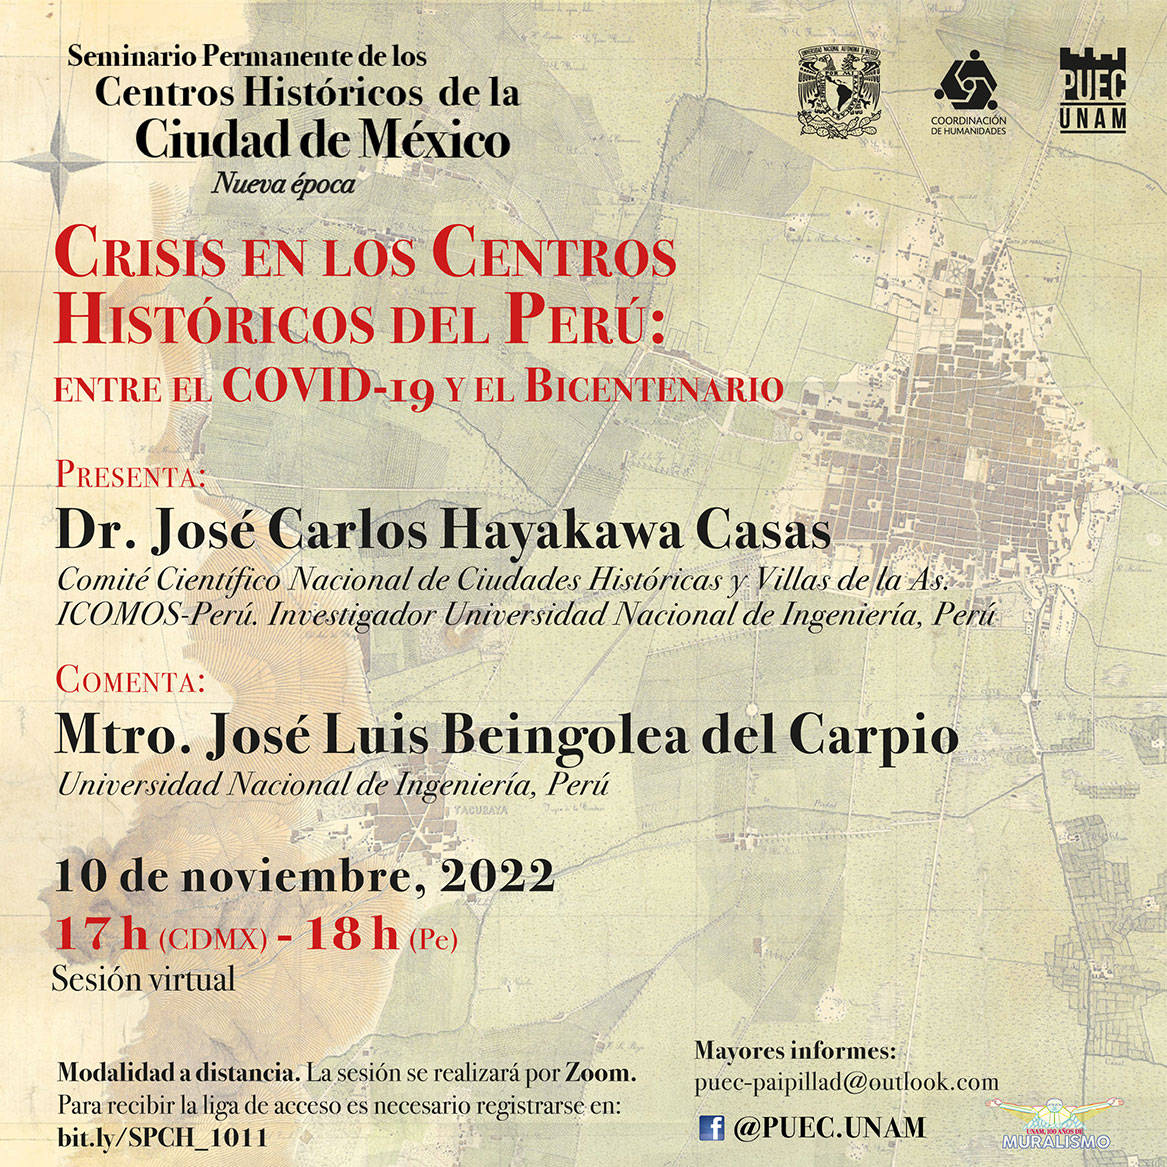 Crisis en los centros históricos del Perú: entre el COVID-19 y el Bicentenario